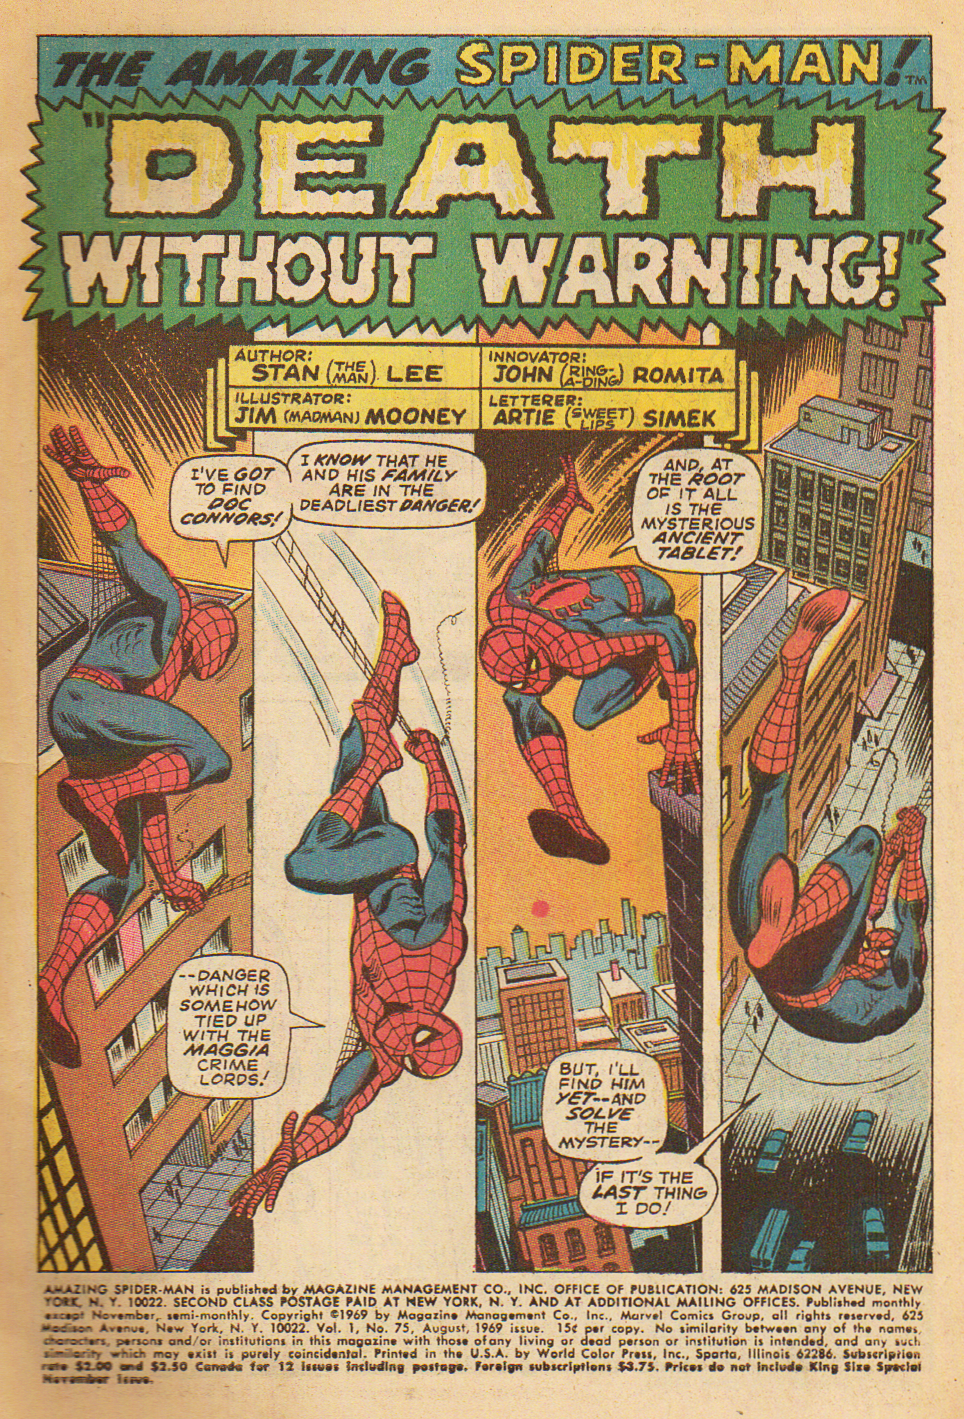 The Amazing Spider-Man #75 | Spider-Man Online